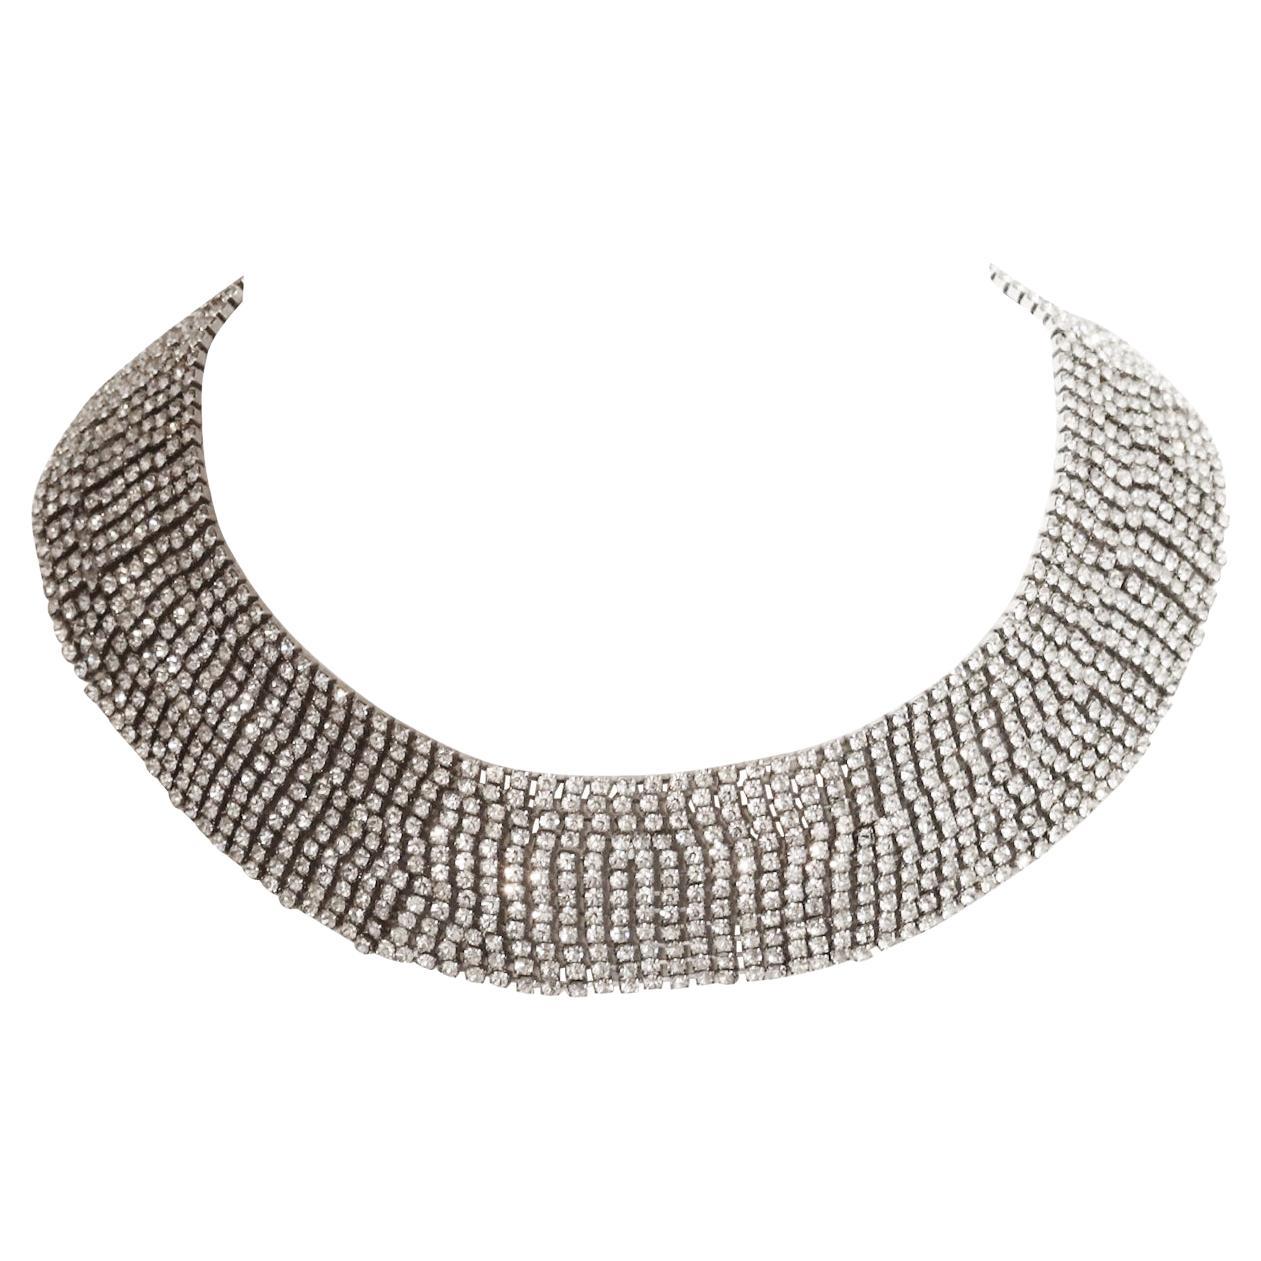 Vintage Pauline Trigere Diamante Wide Collar Necklace, circa 1980s